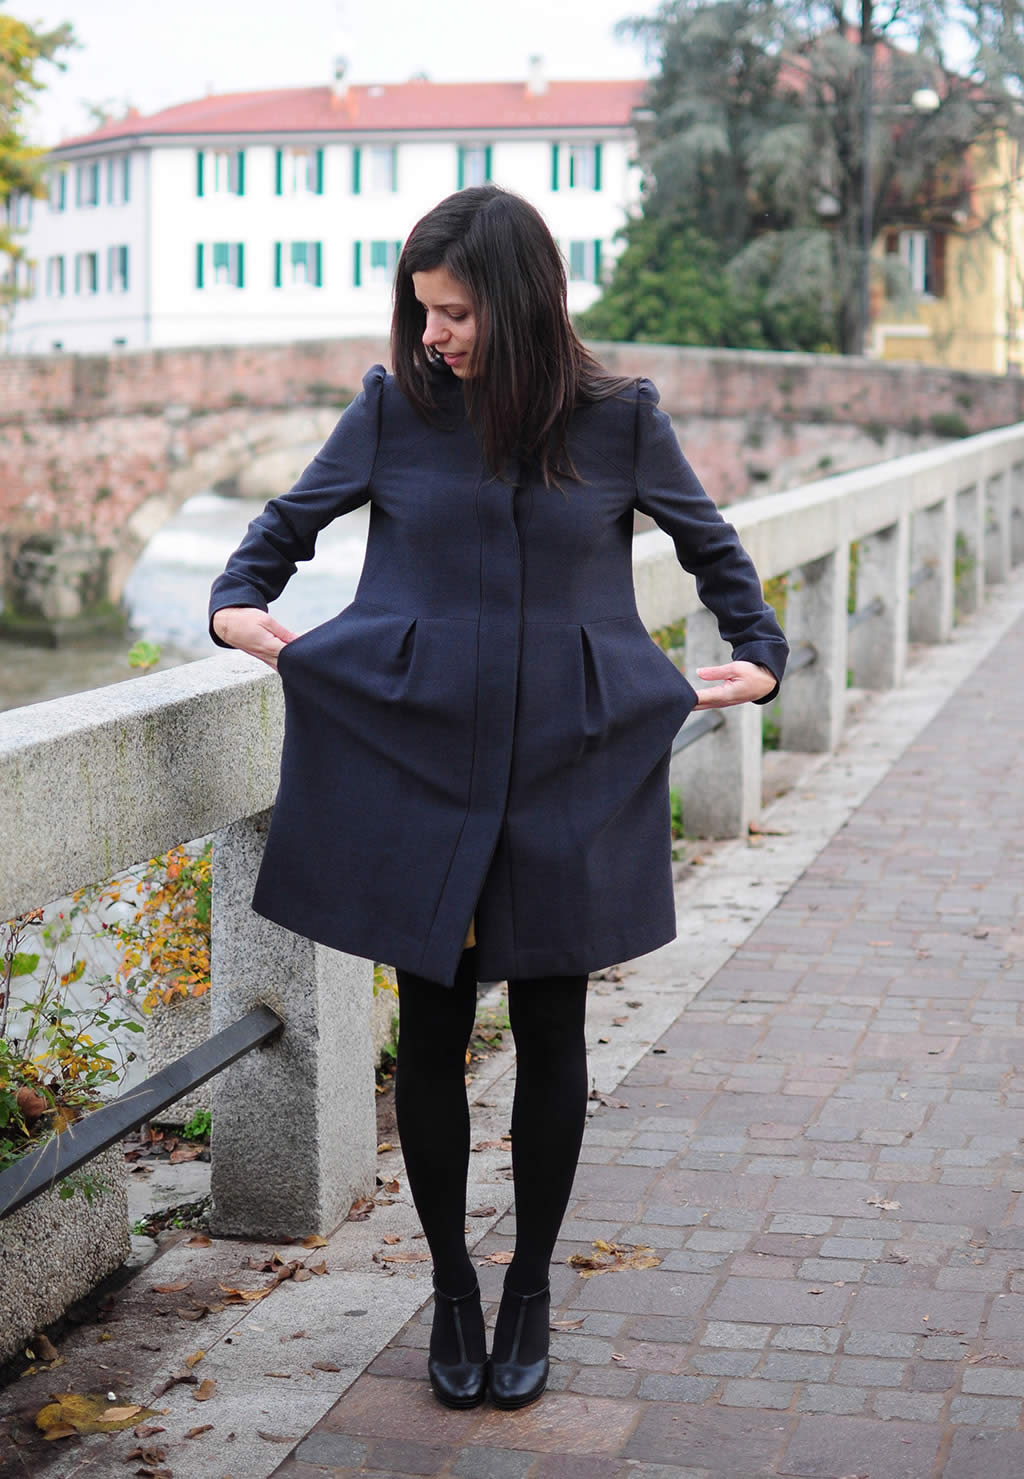 Ladulsatina - Sewing - I make an elegant blue coat - Front seam side pockets